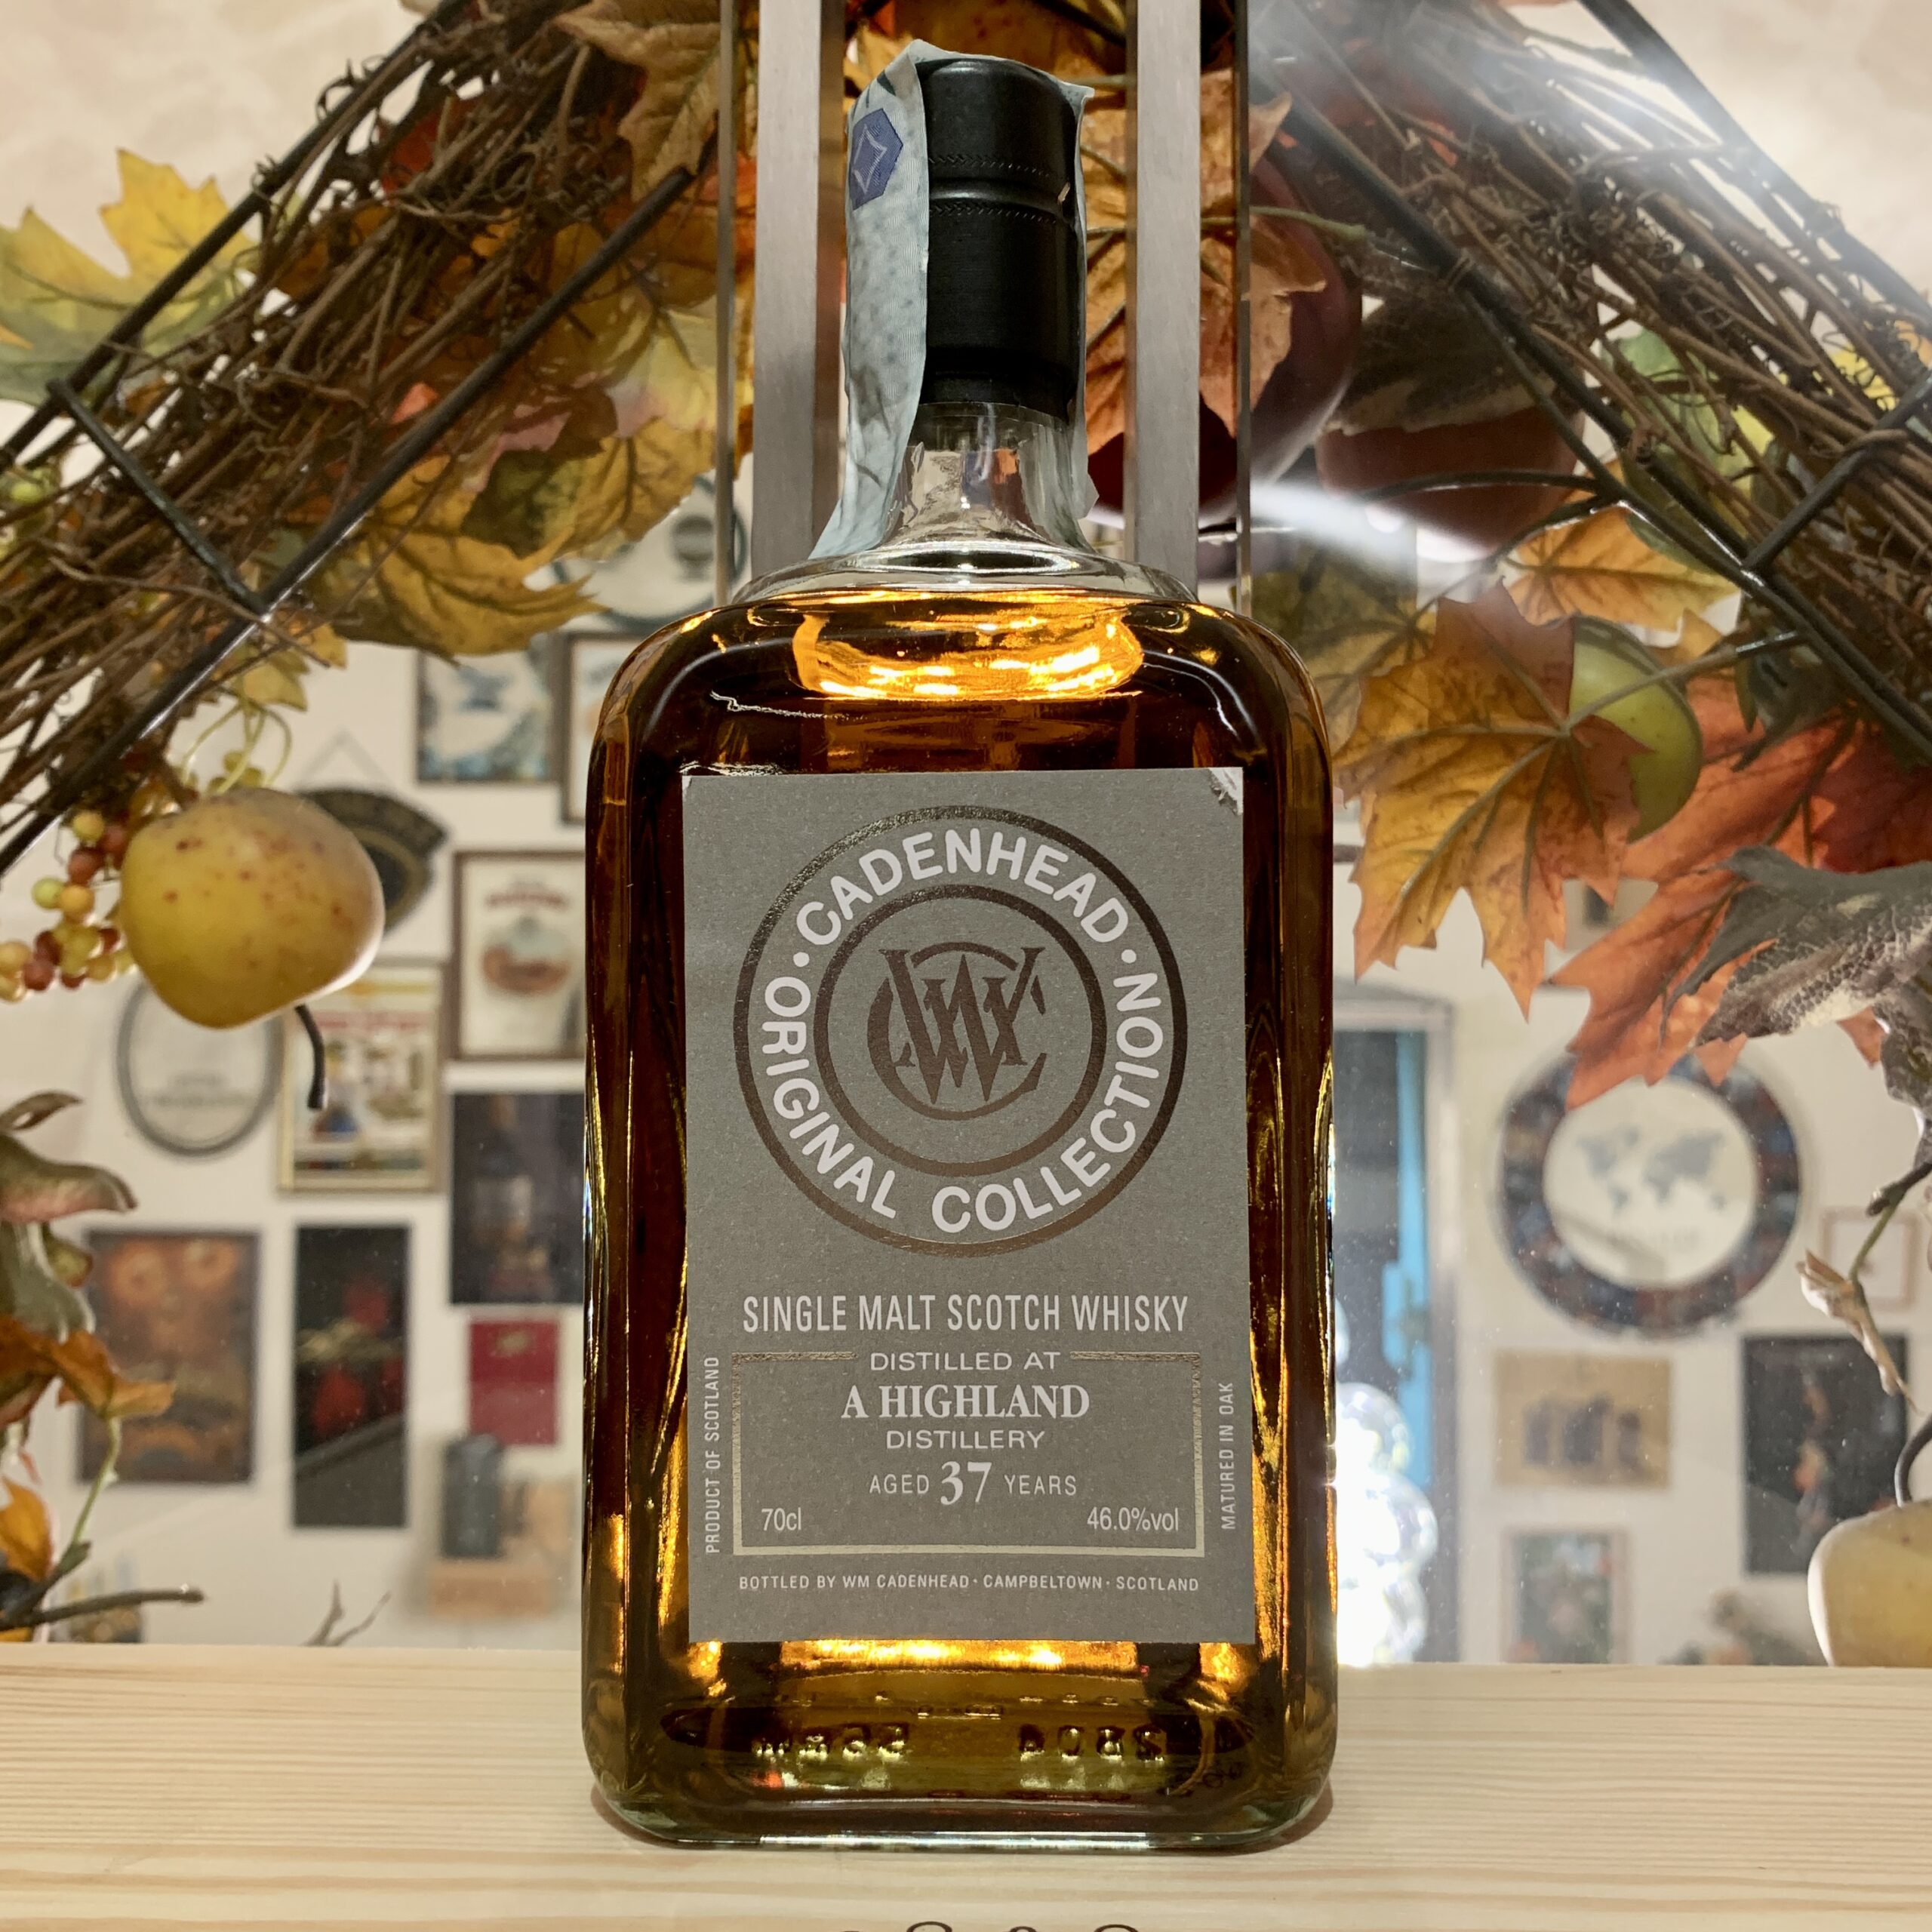 Cadenhead’s Original Collection A Highland Single Malt Scotch Whisky 37 YO